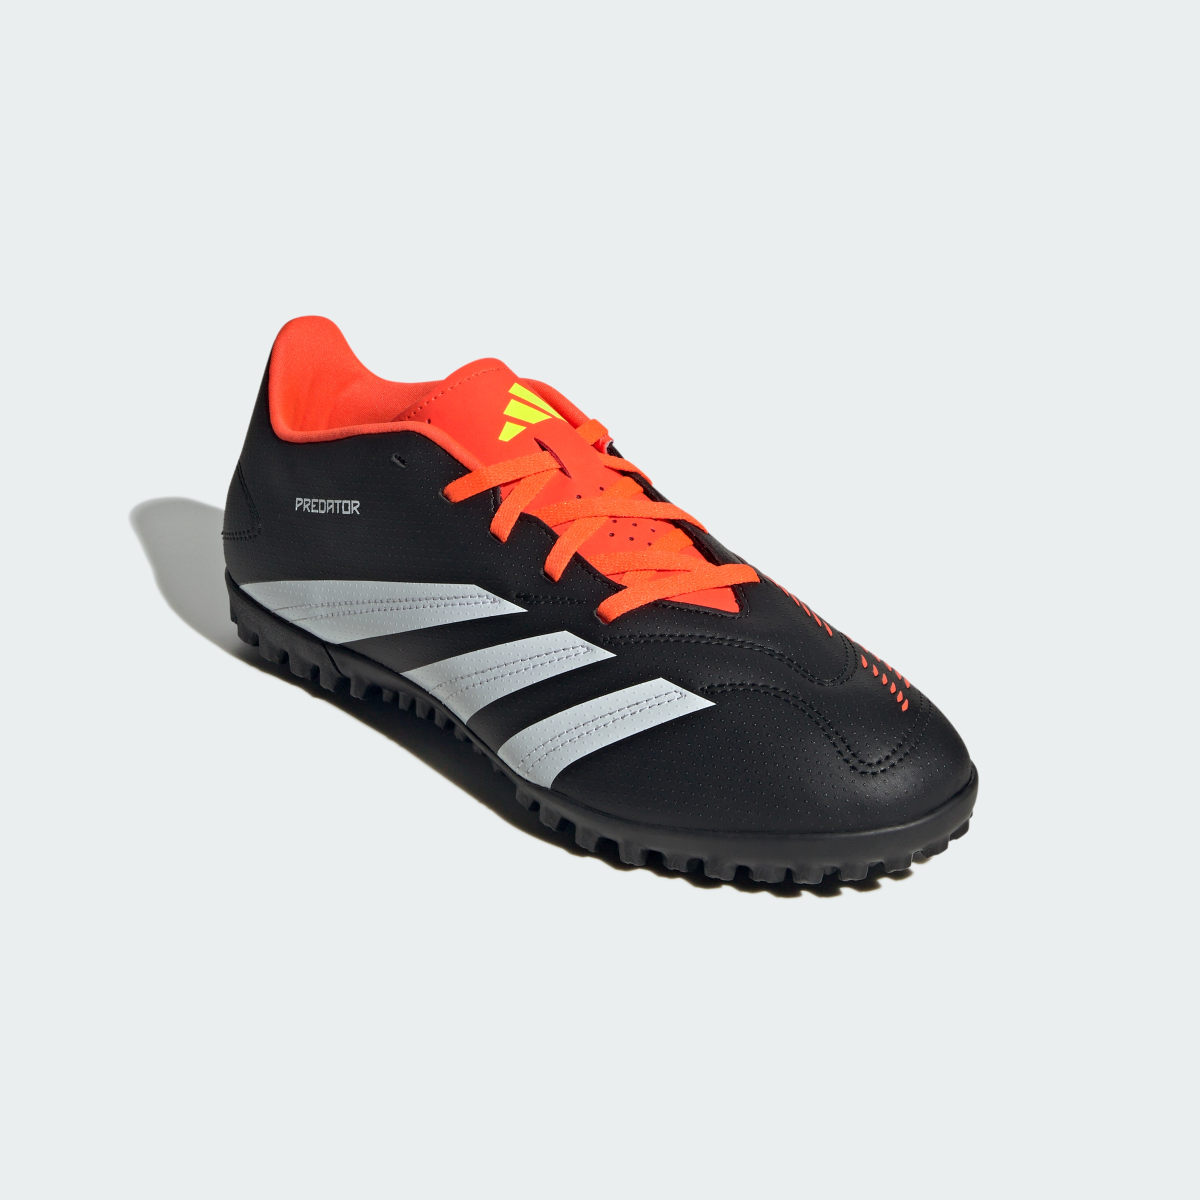 Adidas Predator Club Turf Football Boots. 5